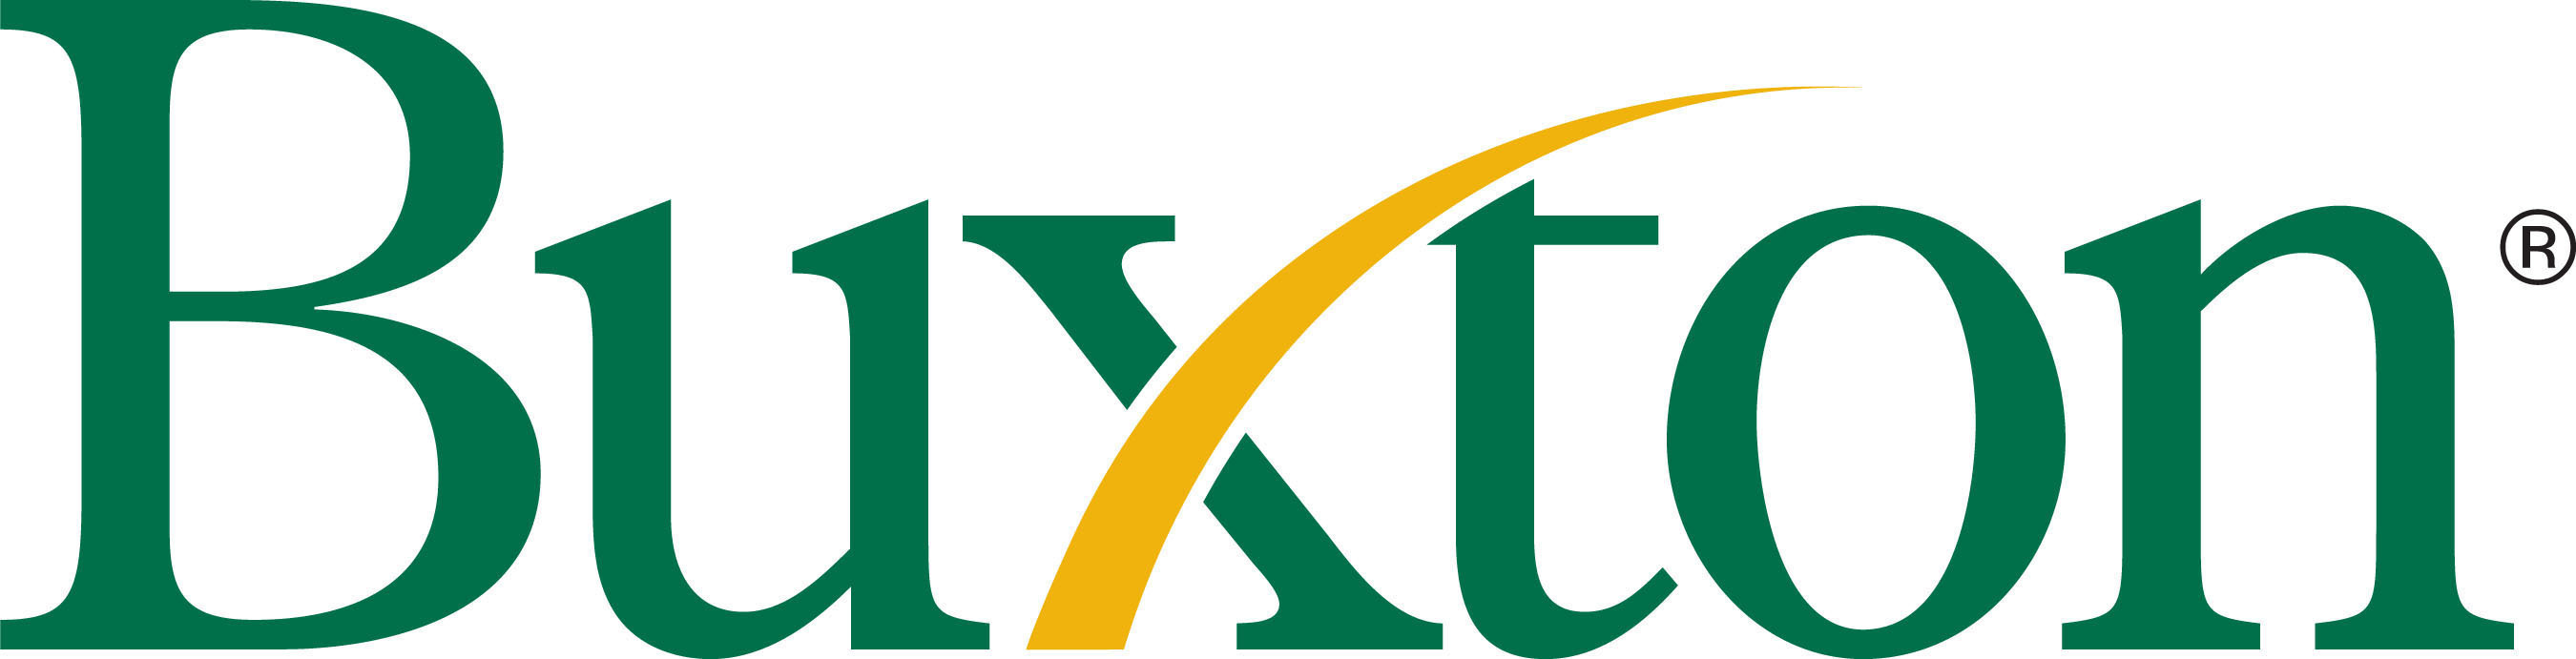 Buxton Logo.